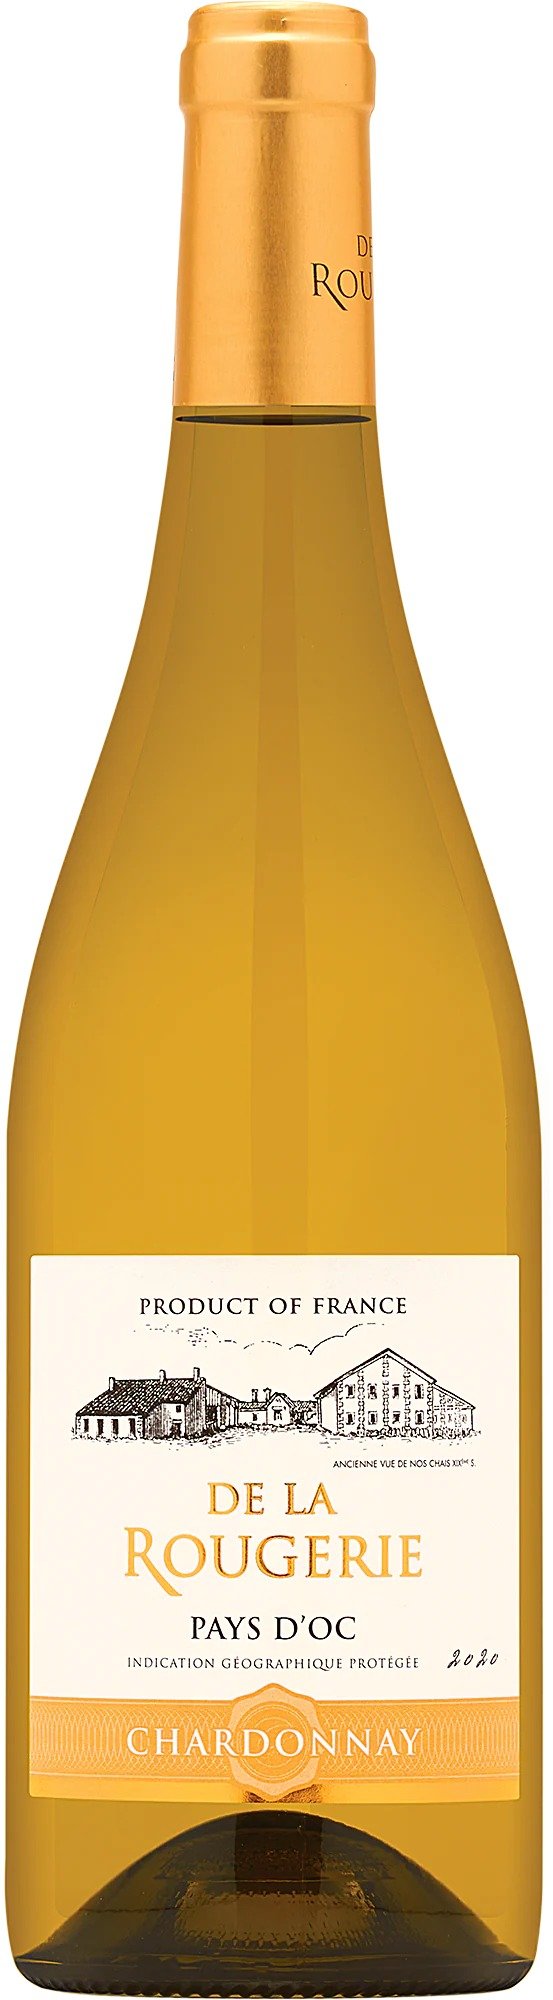 2020 De La Rougerie Chardonnay